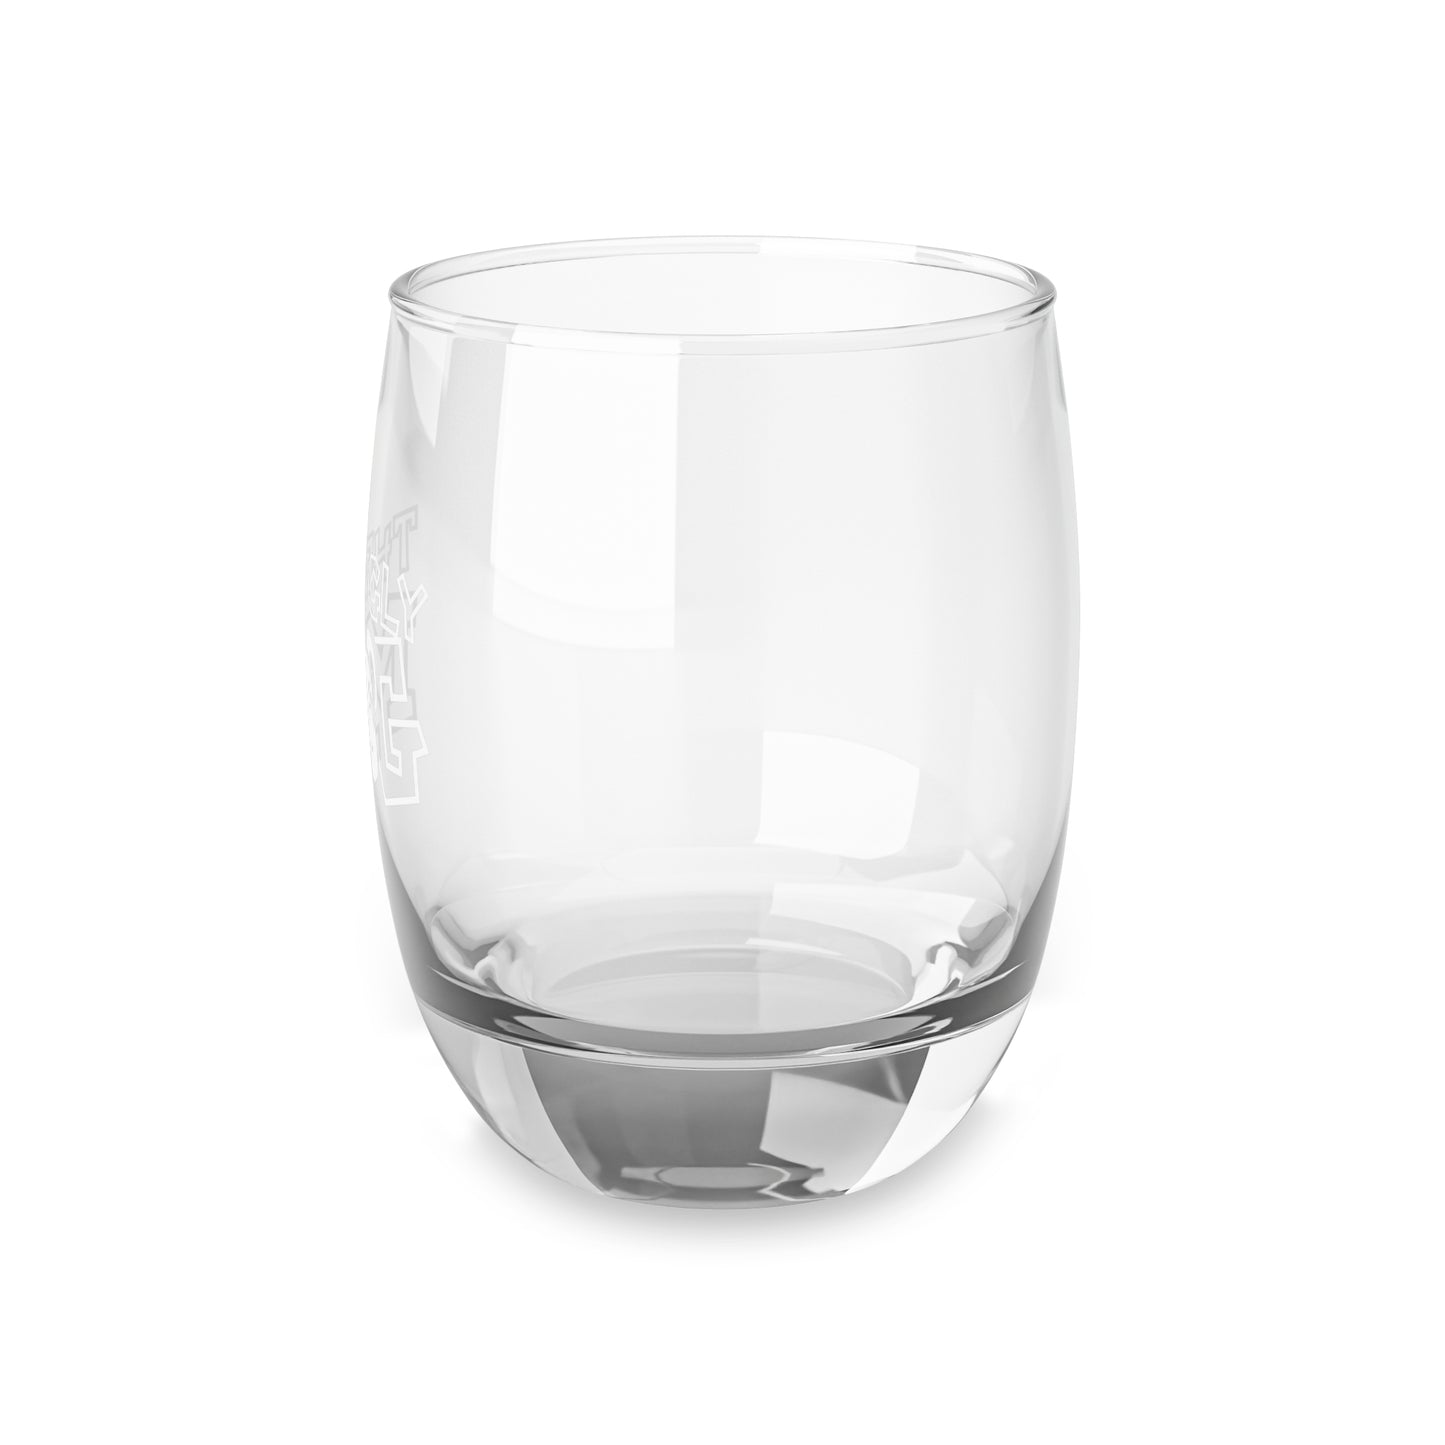 The Ugly Mug Whiskey Glass